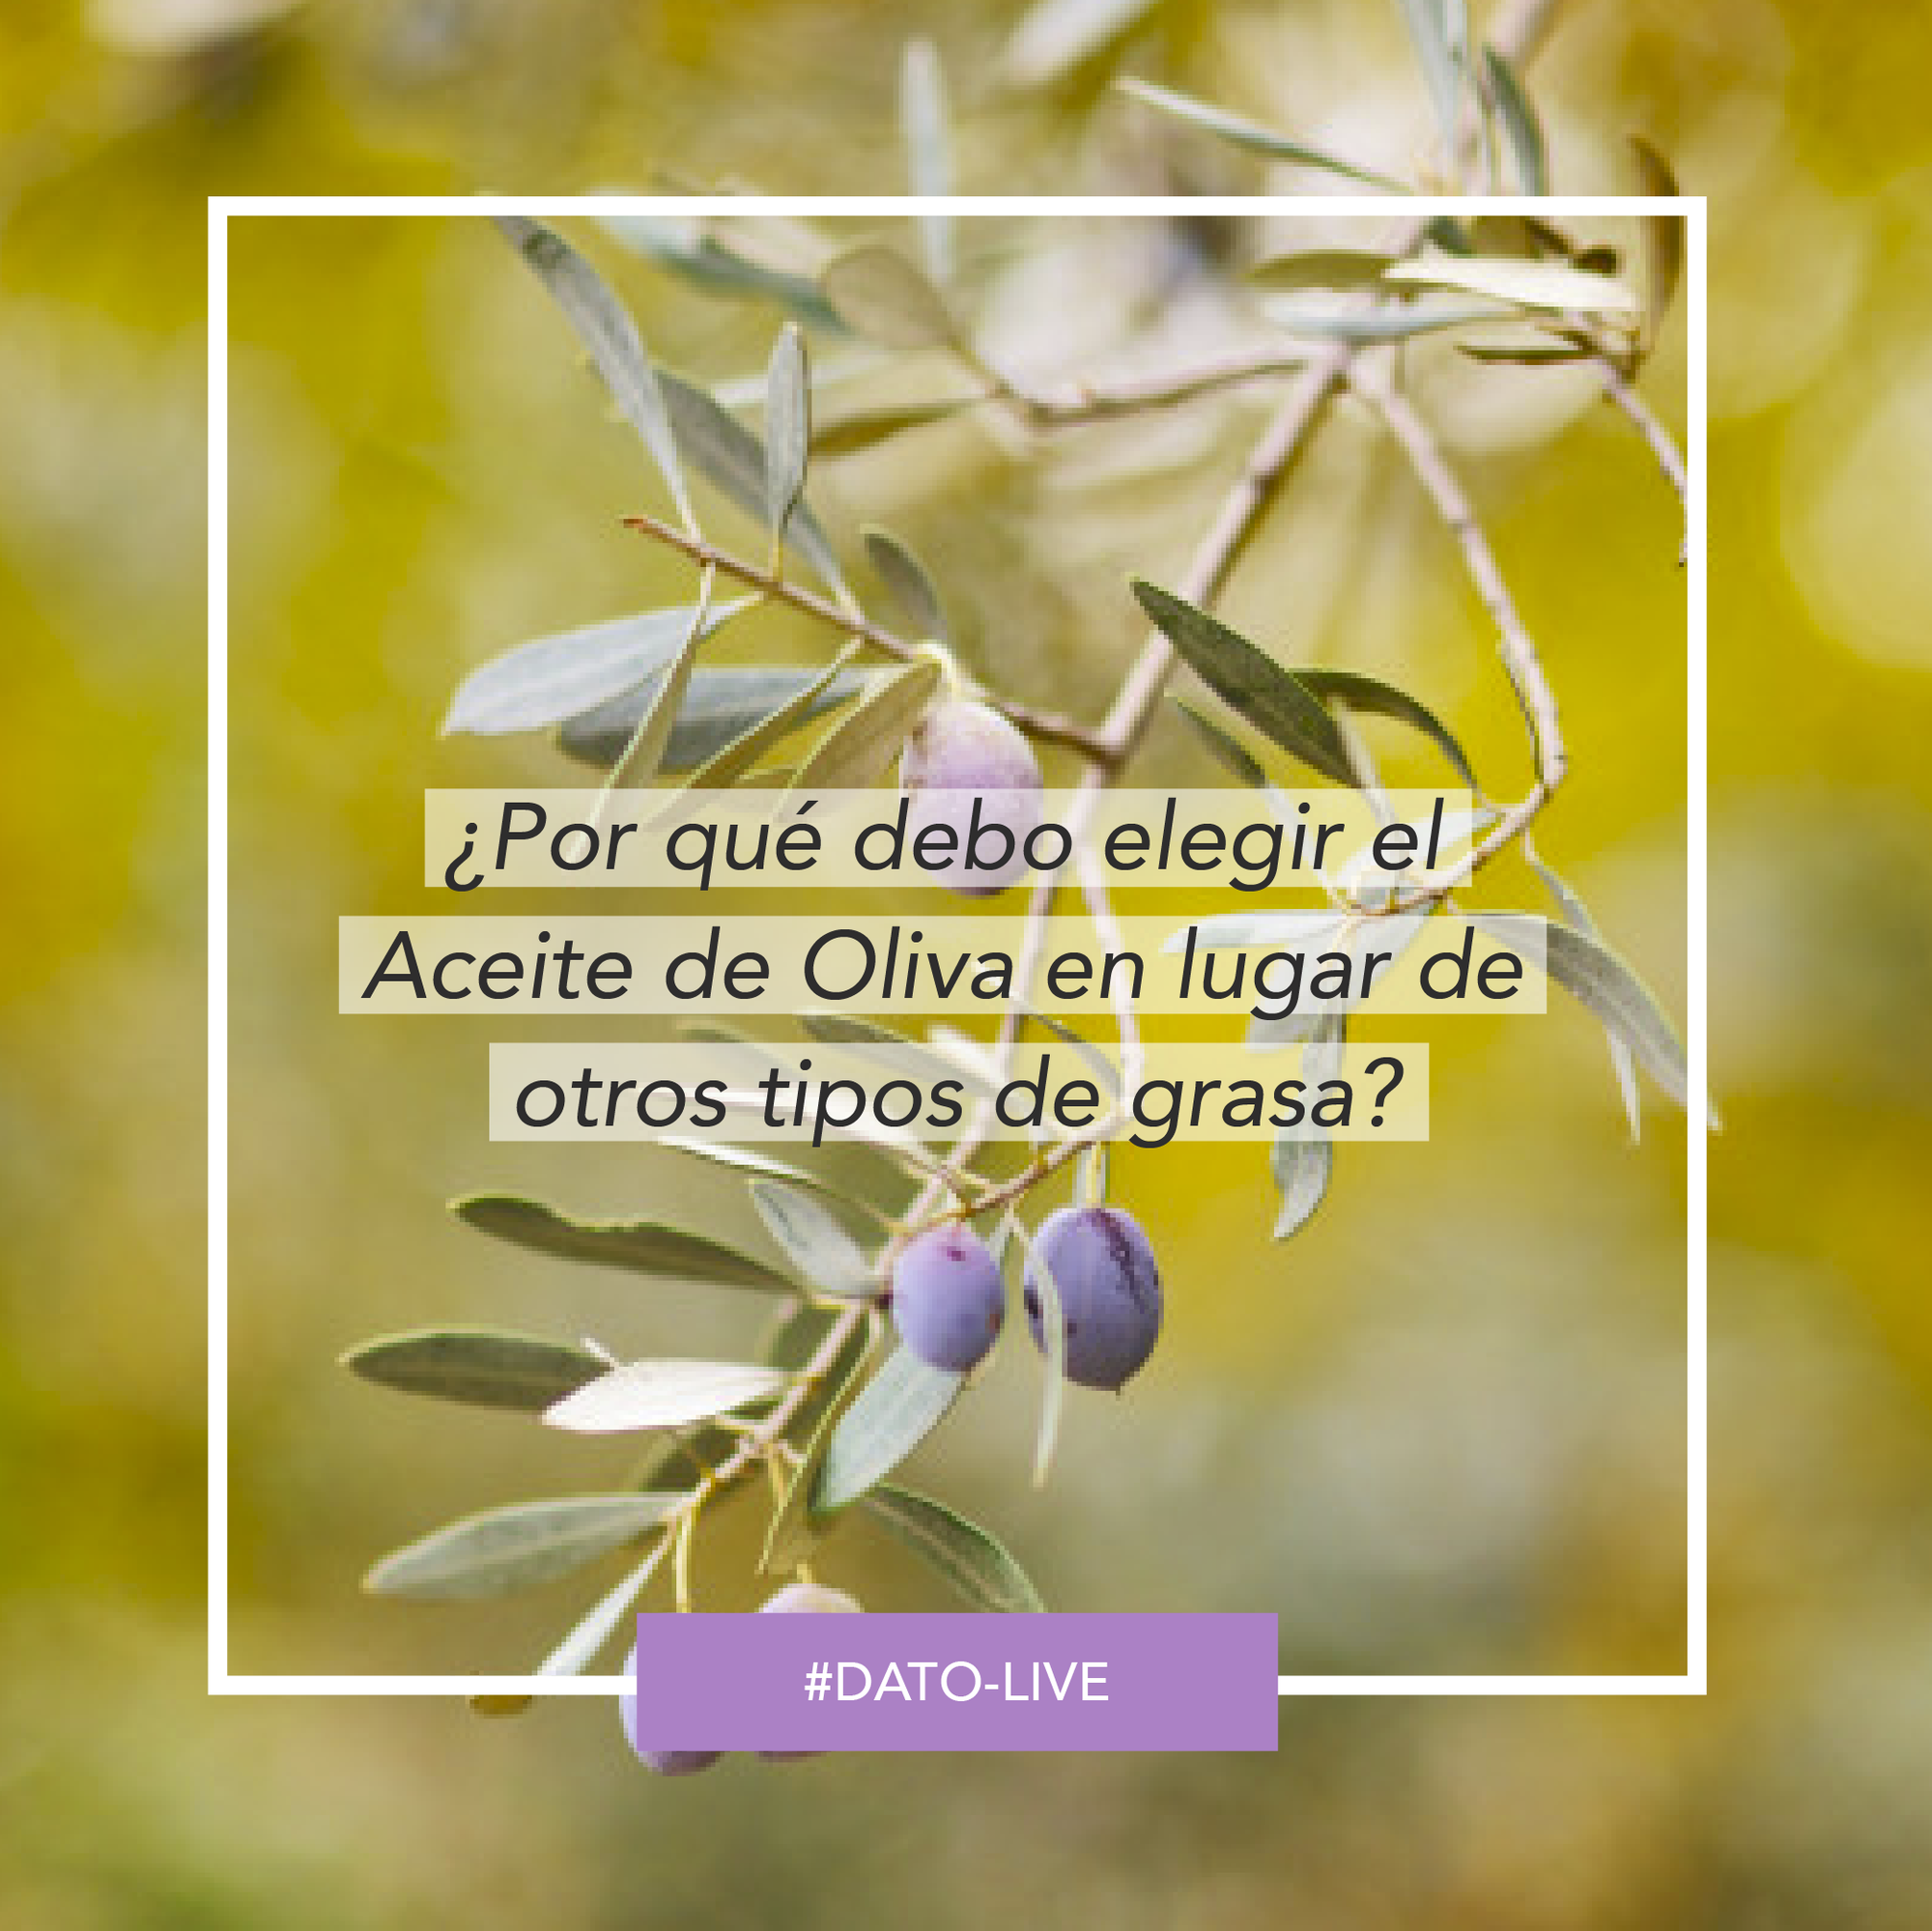 Portada de Dato O-Live que muestra el texto: "¿Por qué debo elegir el aceite de oliva en lugar de otros tipos de grasa?".